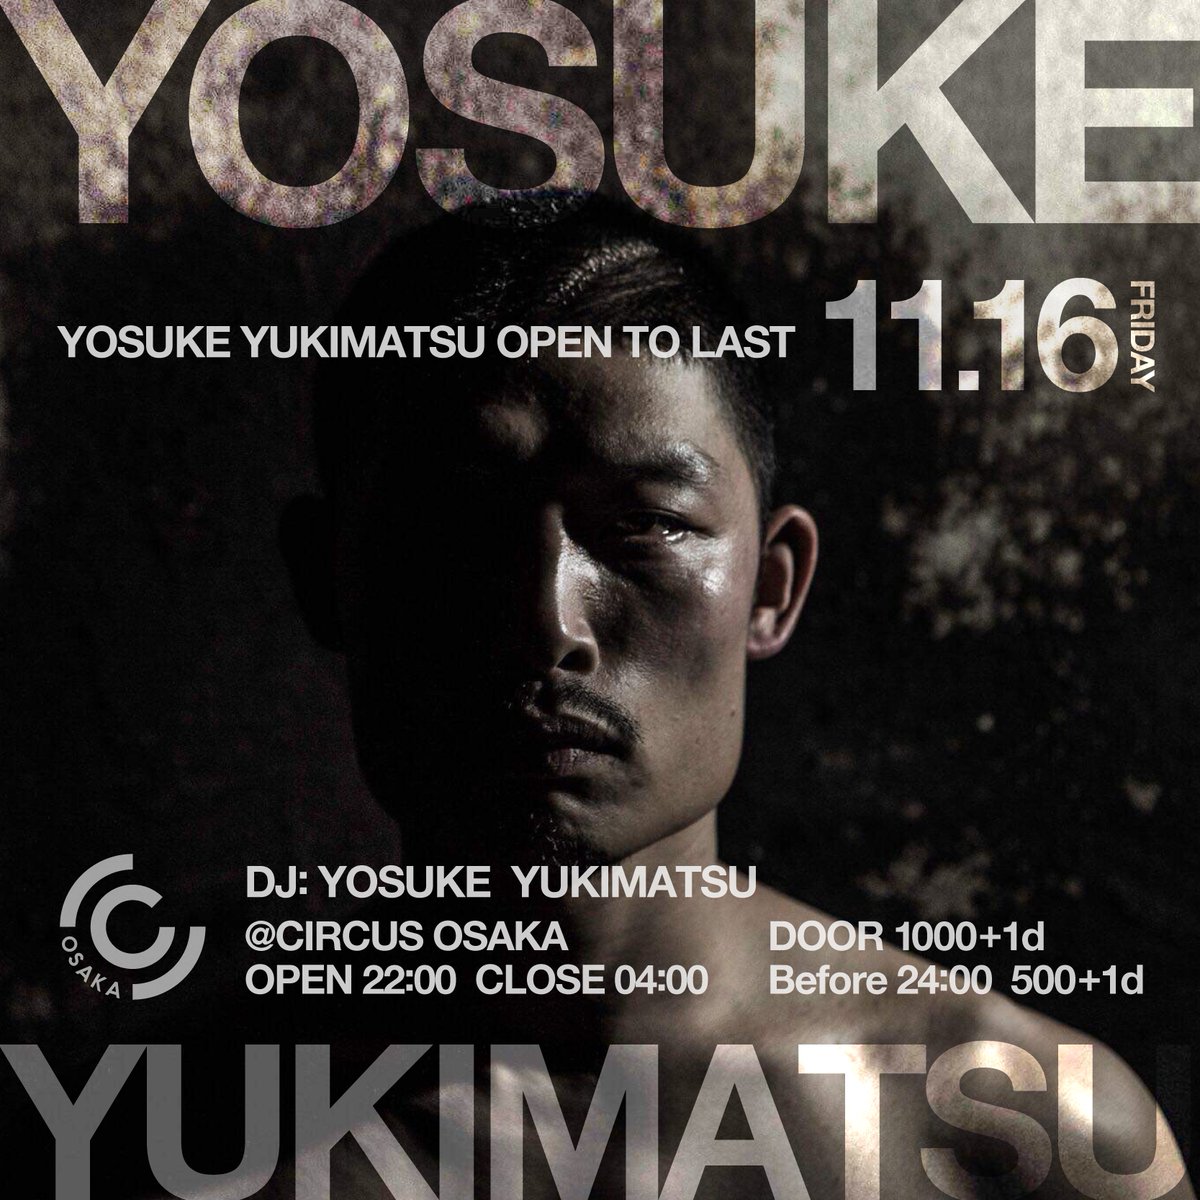 Yousuke Yukimatsu